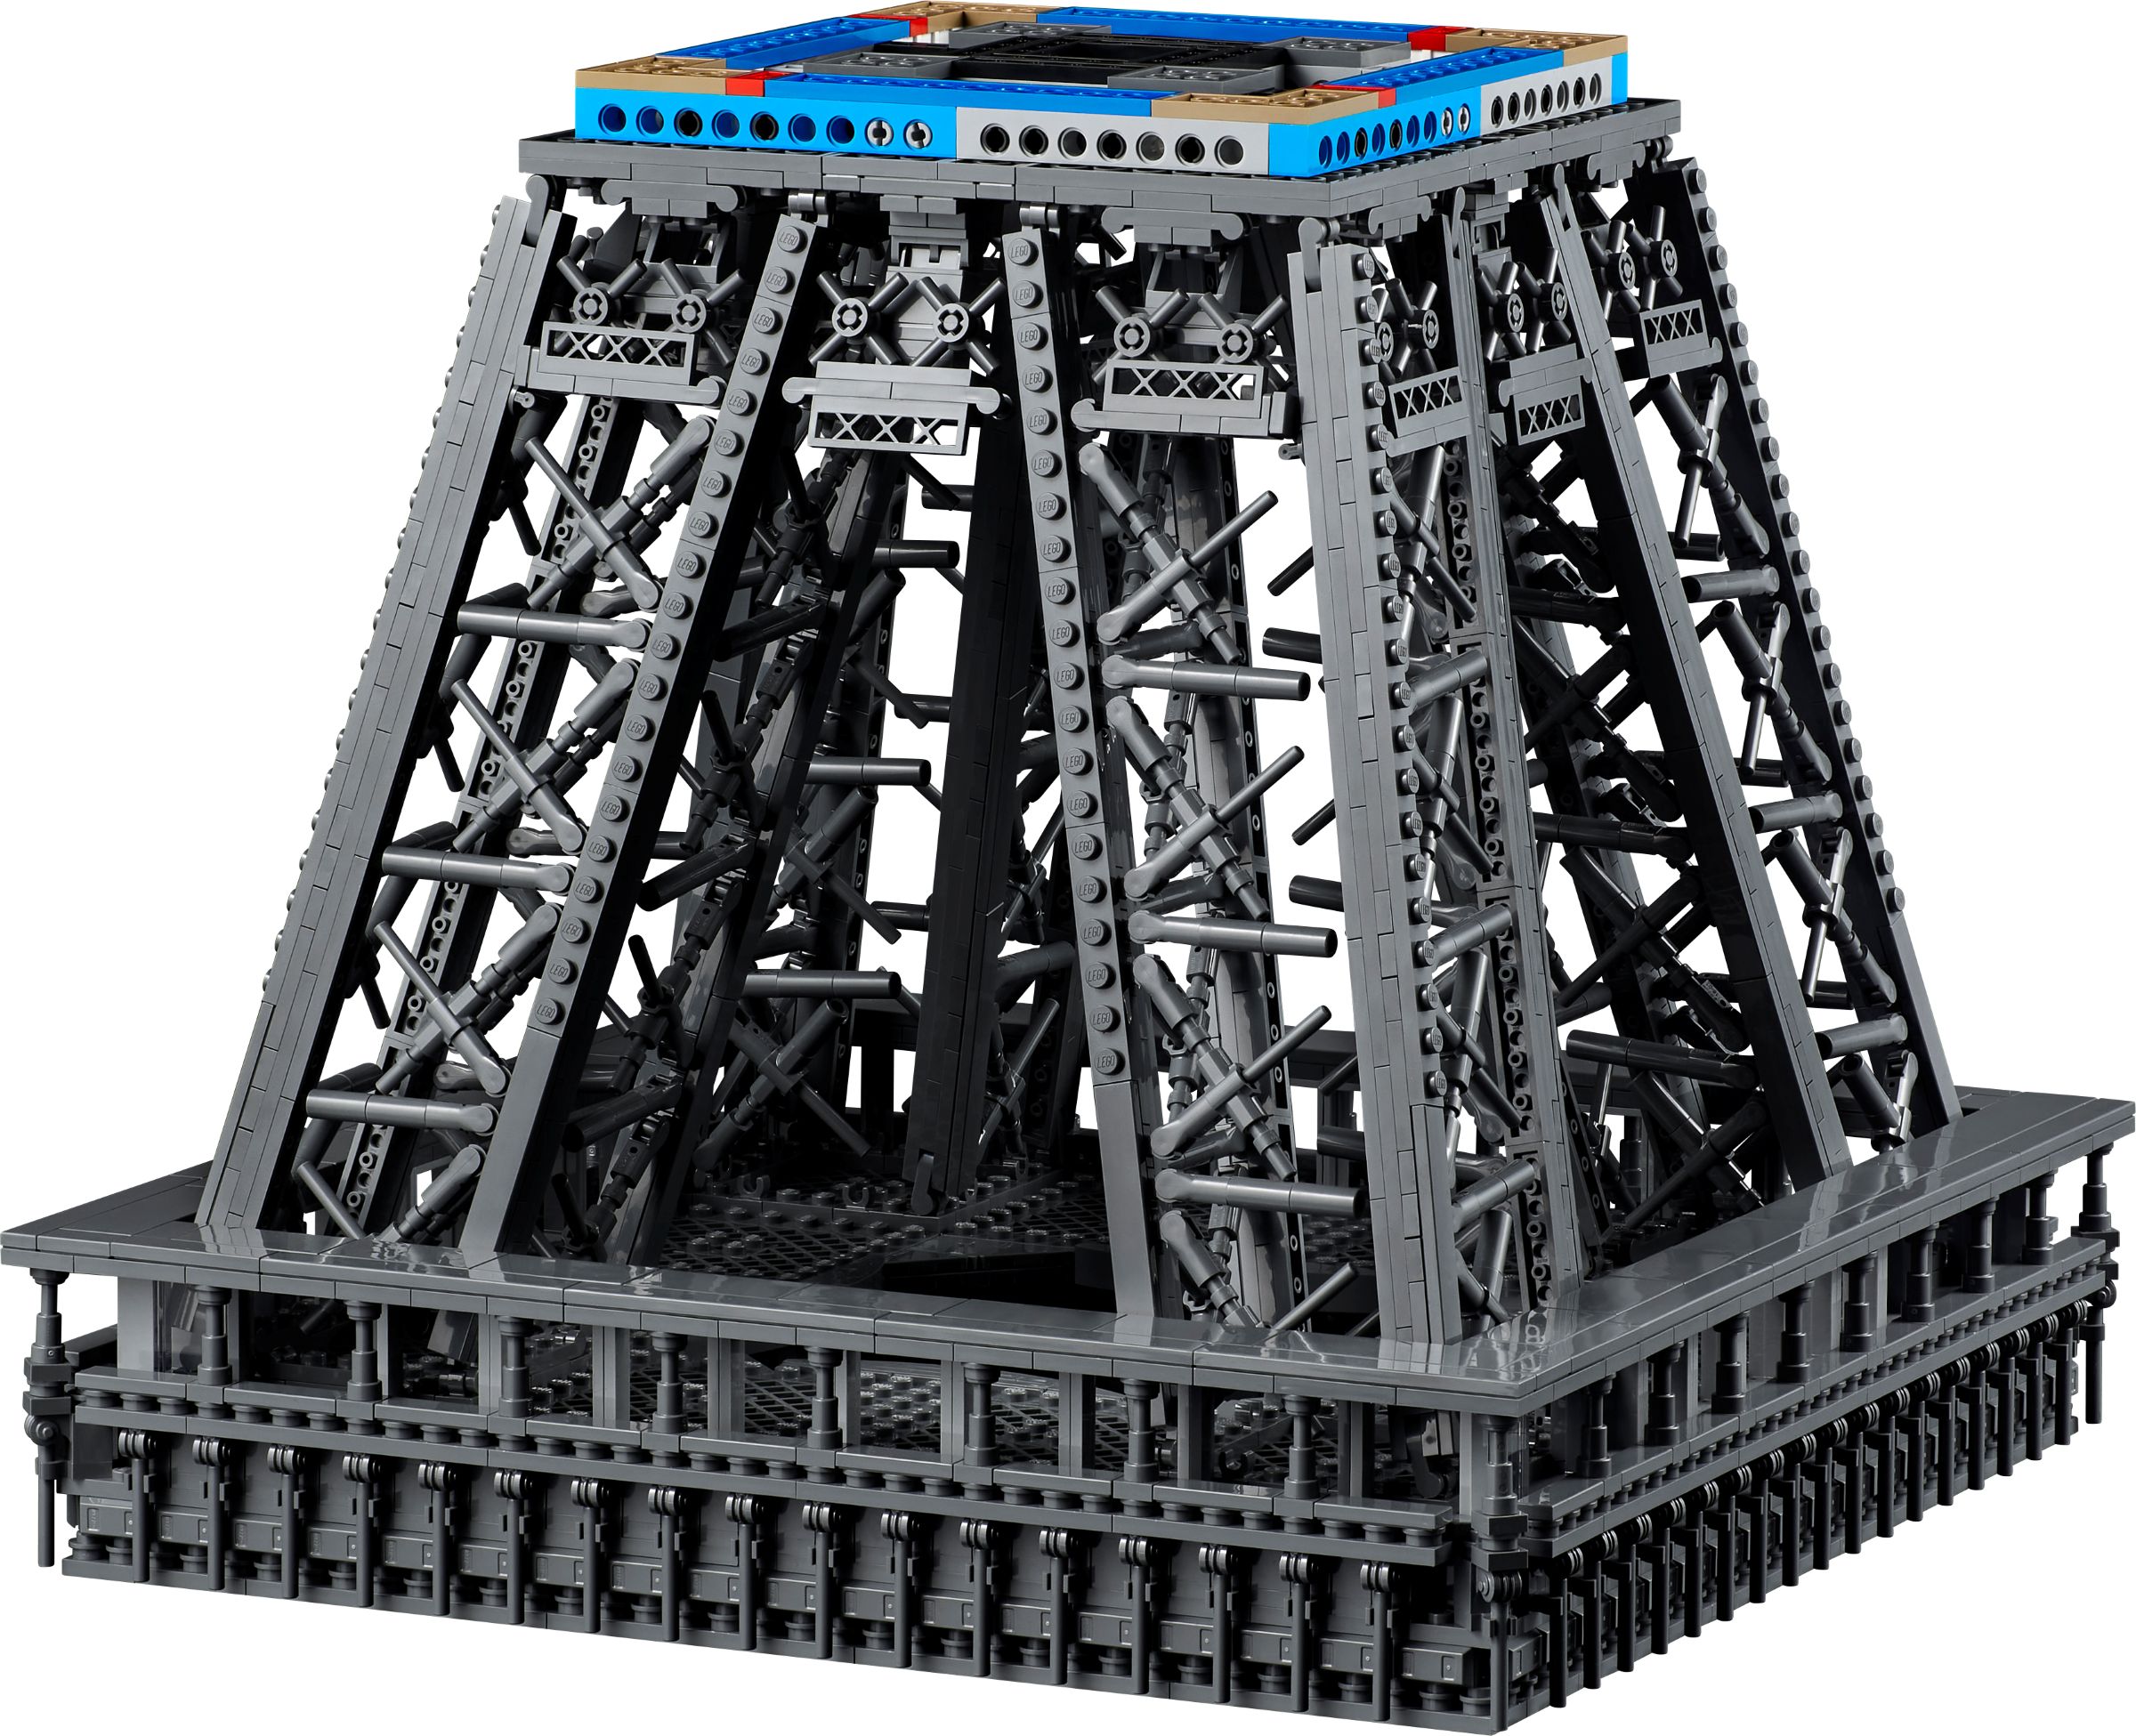 LEGO Advanced Models 10307 Eiffelturm Paris LEGO_10307_alt5.jpg